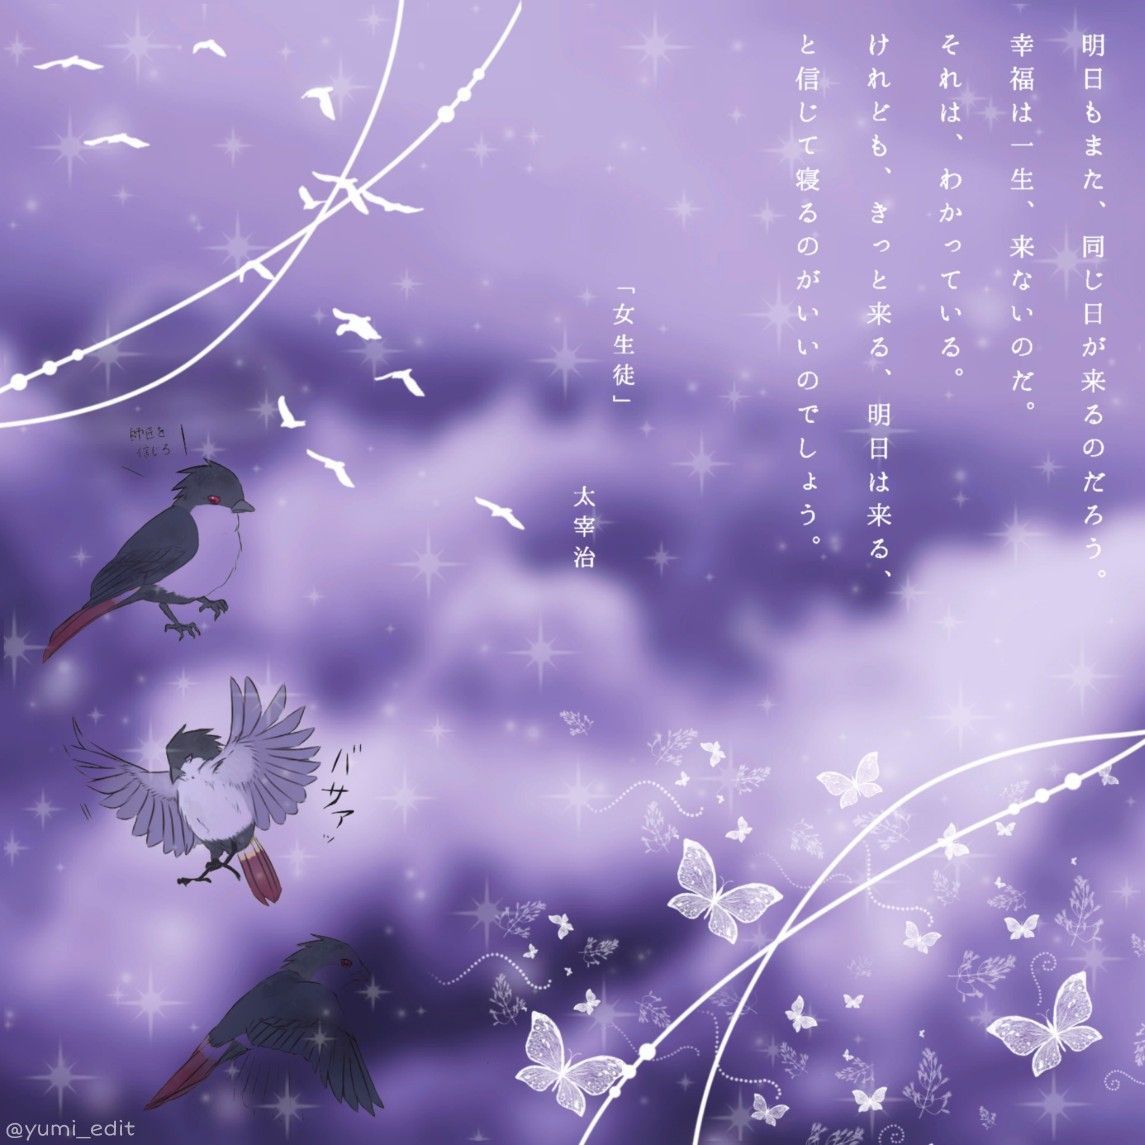 Sasuke Uchiha purple Aesthetic edit naruto. Purple aesthetic, Purple aesthetic background, Gold wallpaper background